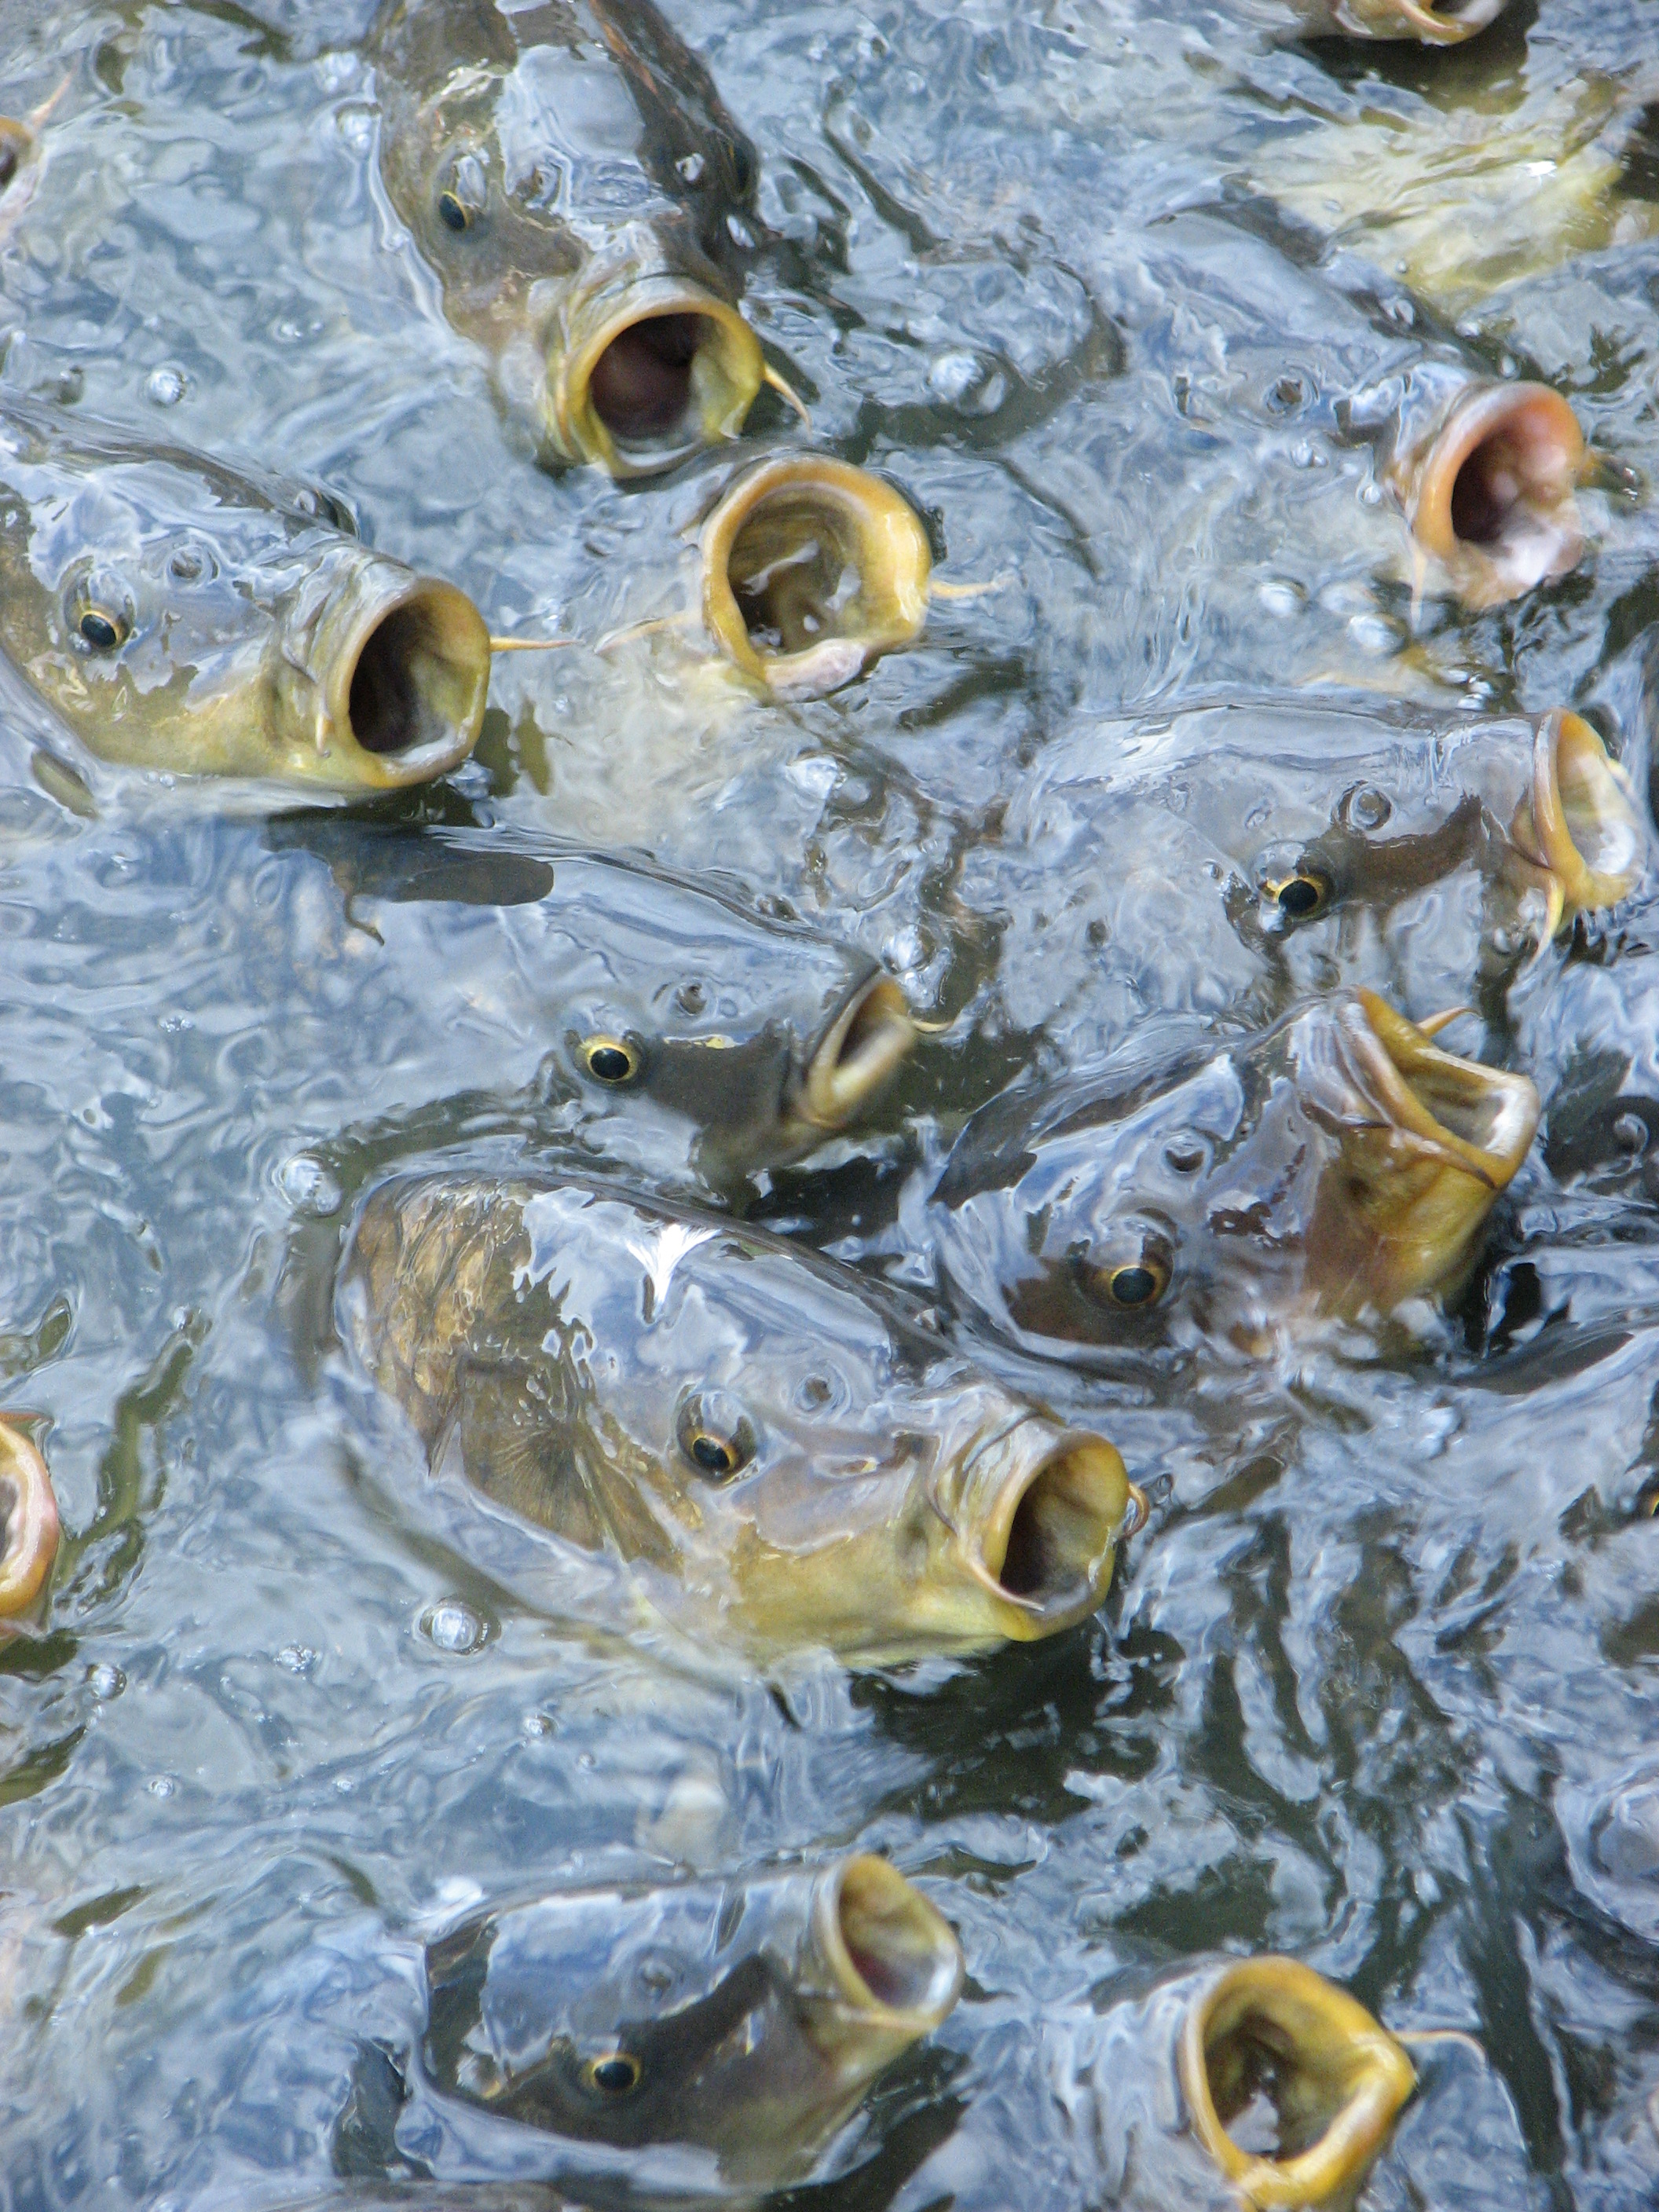 Catfish feeding photo